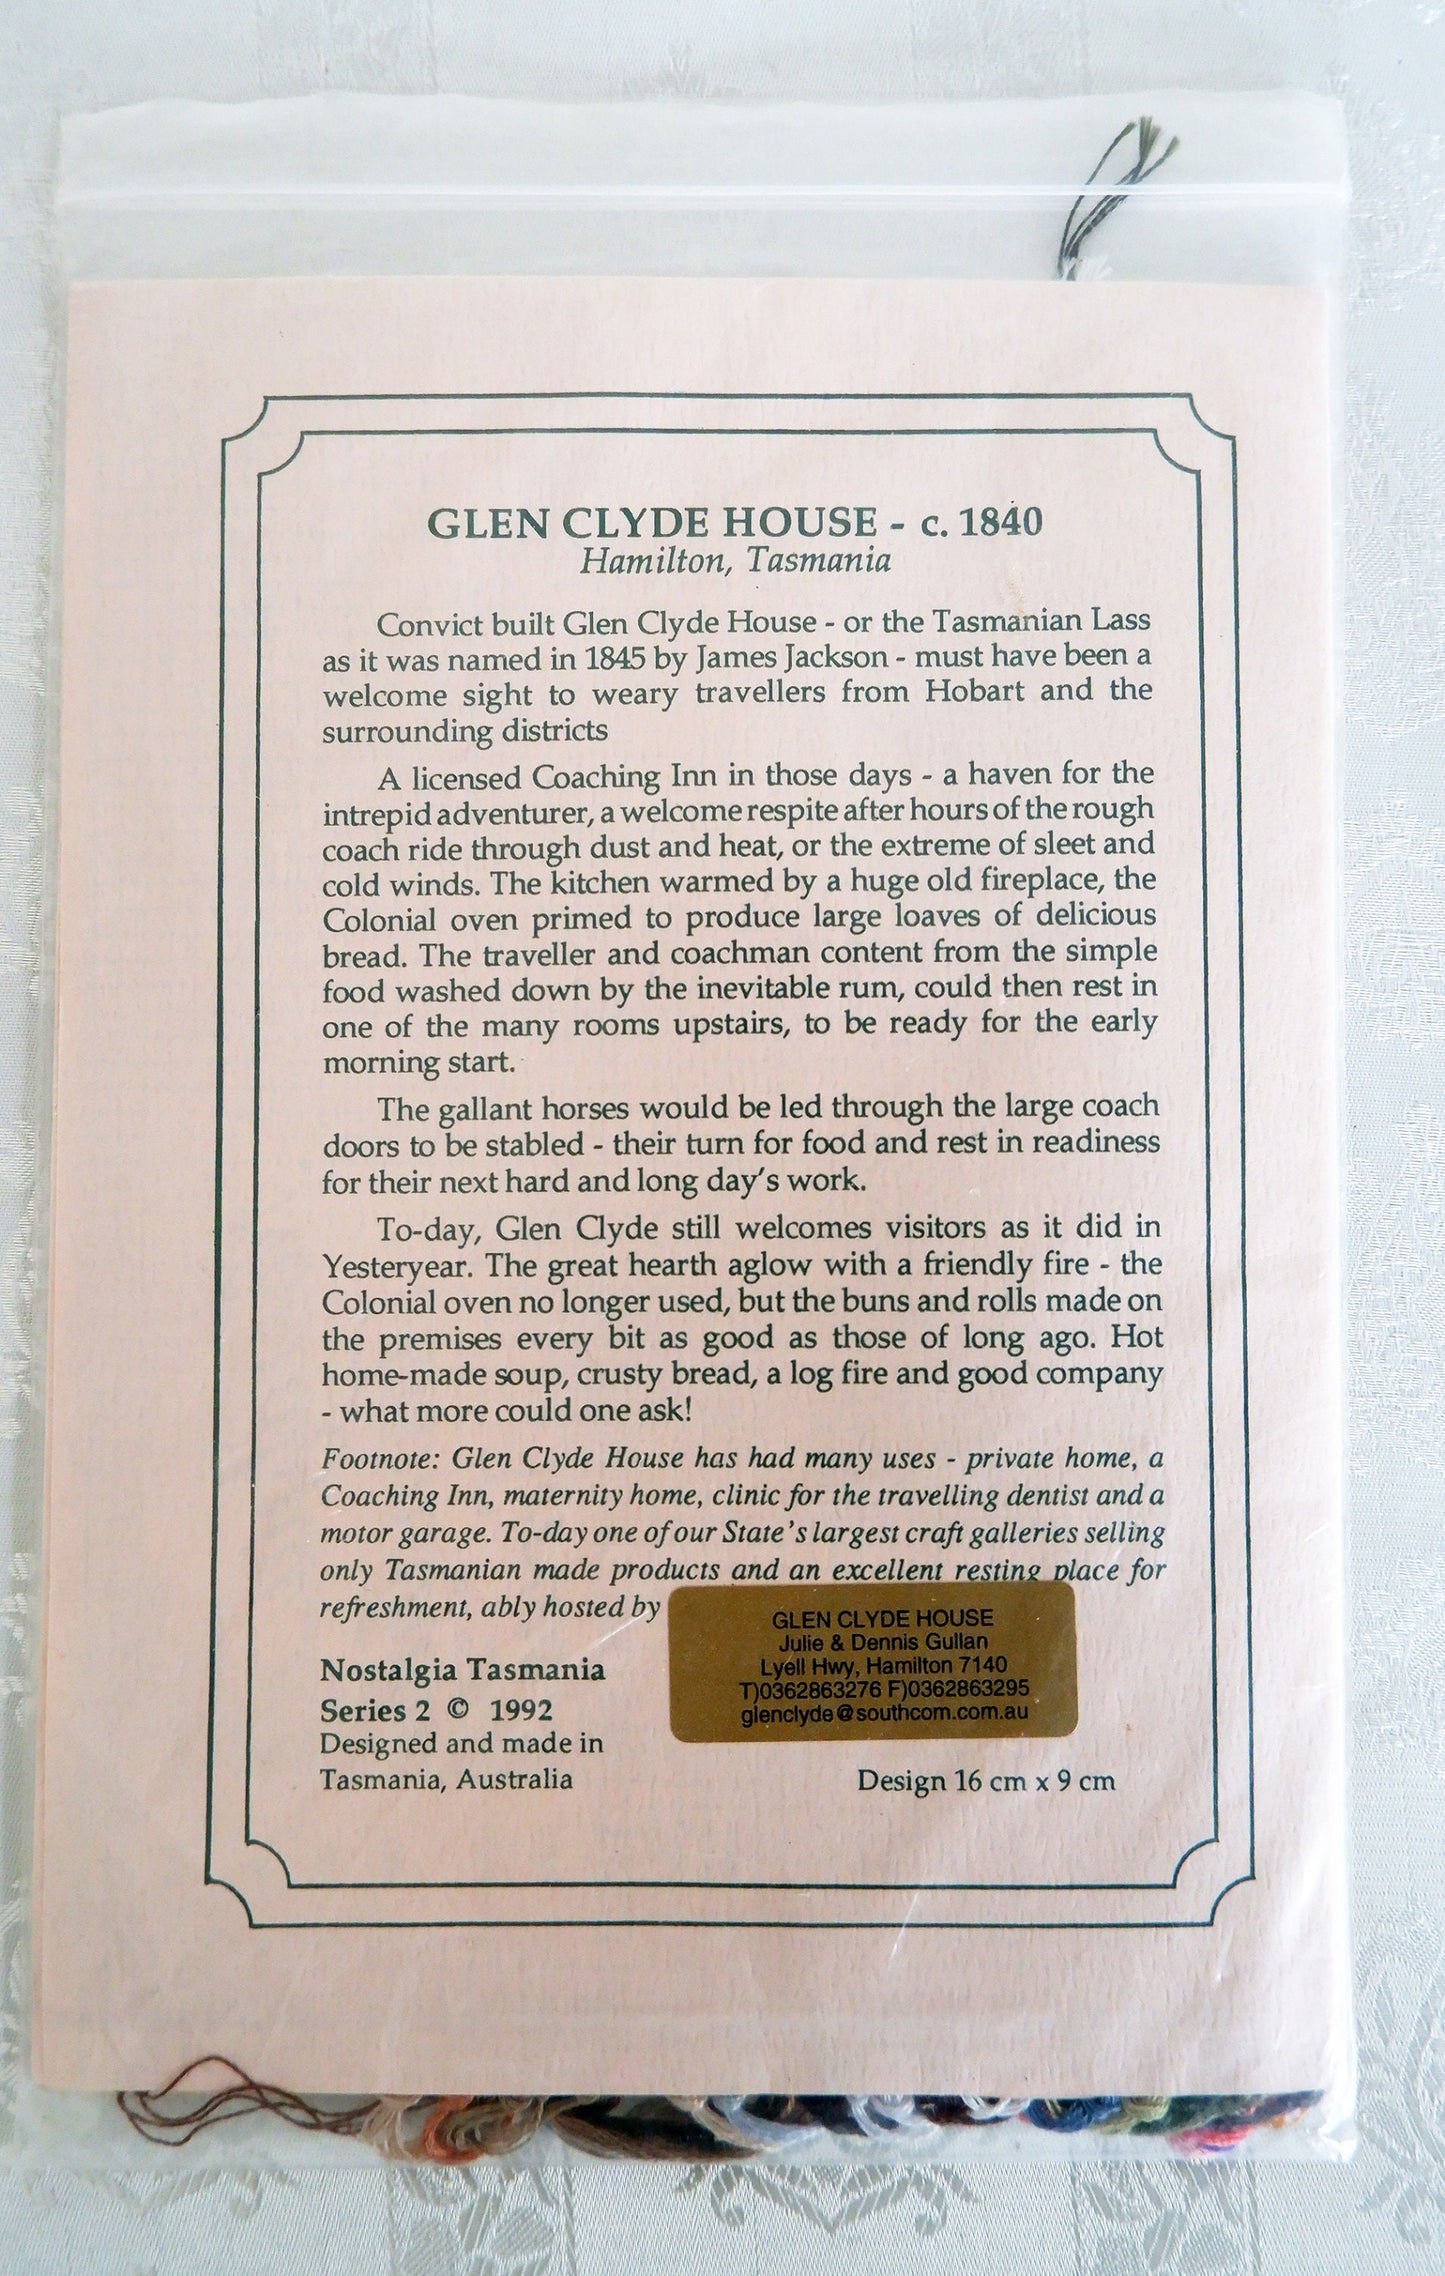 Glen Clyde House, Cross Stitch pattern, DIY Kit, Nostalgia Tasmania Series 2